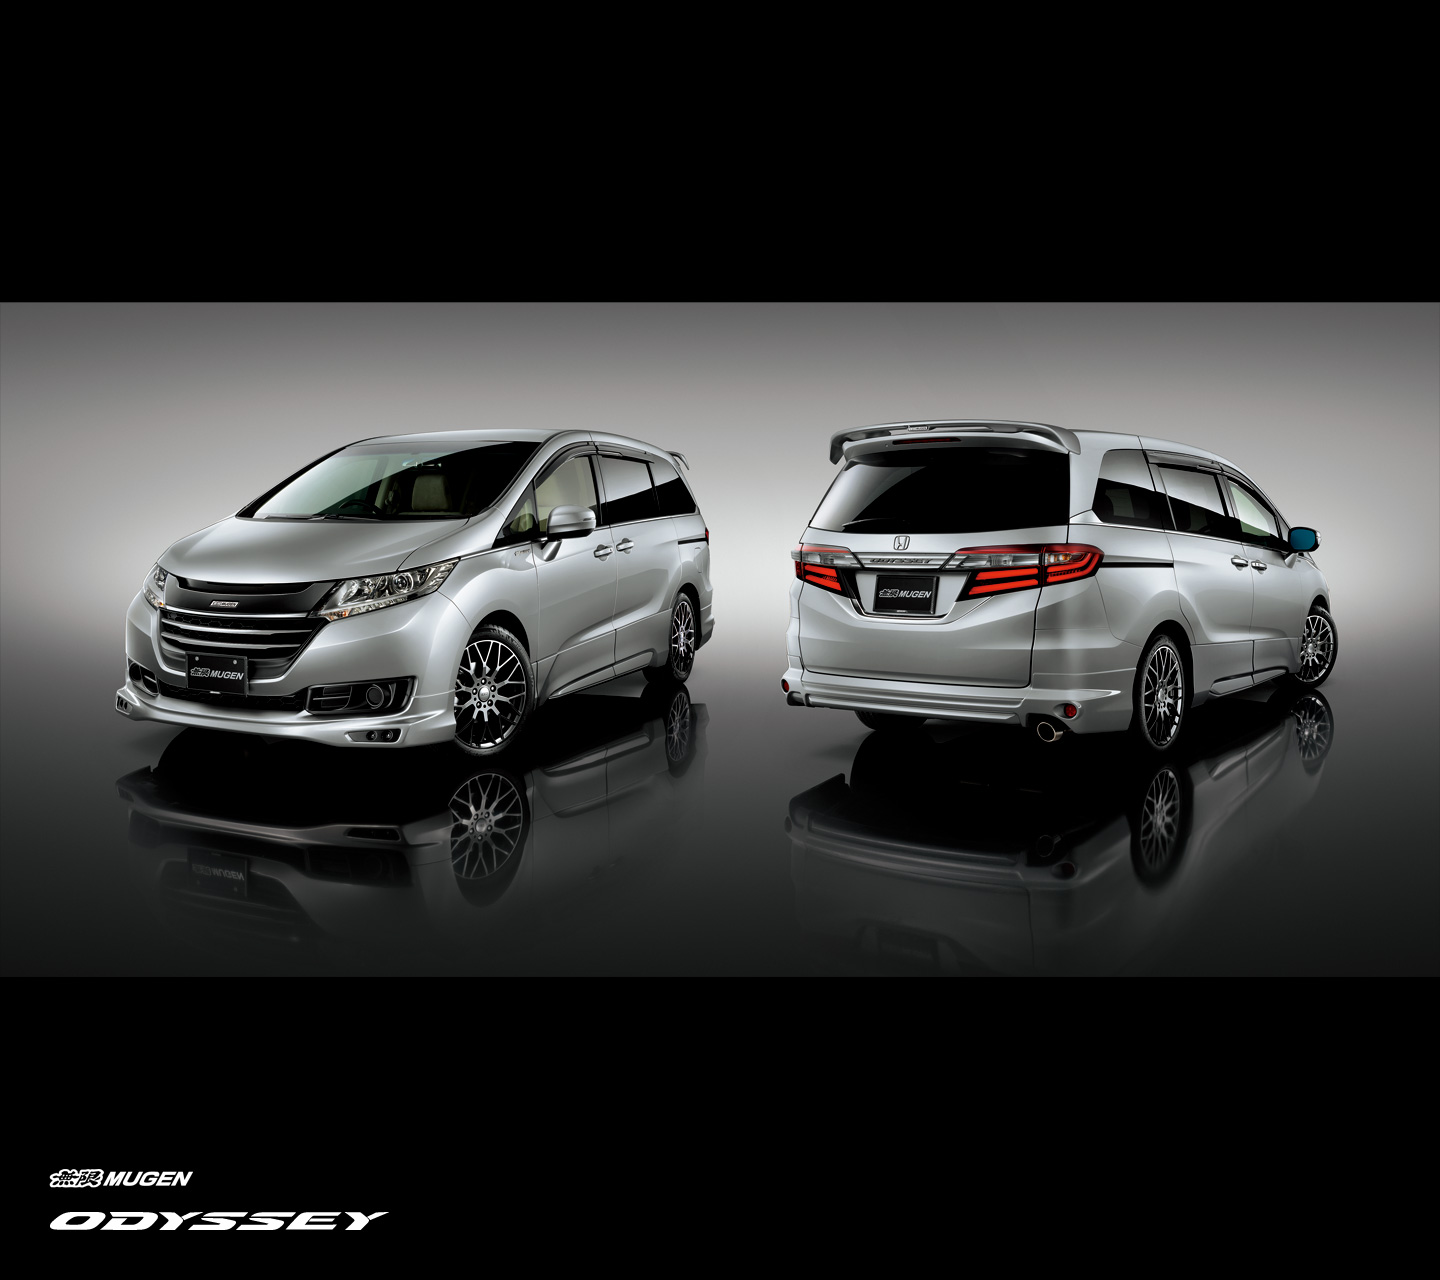 Honda, Honda Odyssey Mugen tuned: Honda Oddyssey 2014 Mugen Edition Tampil Lebih Sporty [with Video]